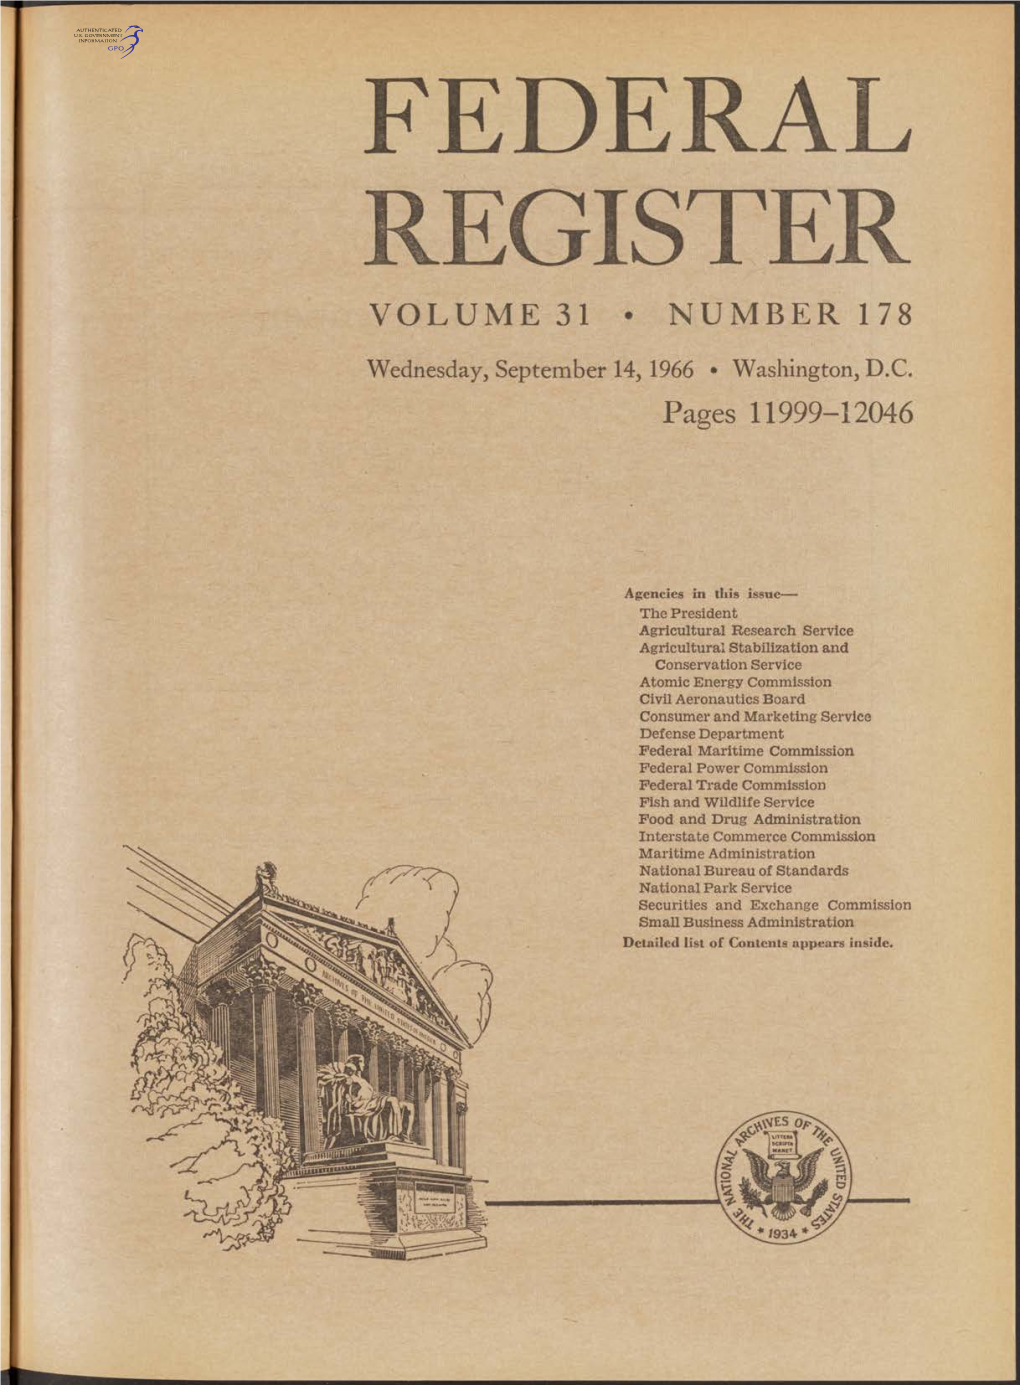 Federal Register Volume 31 • Number 178